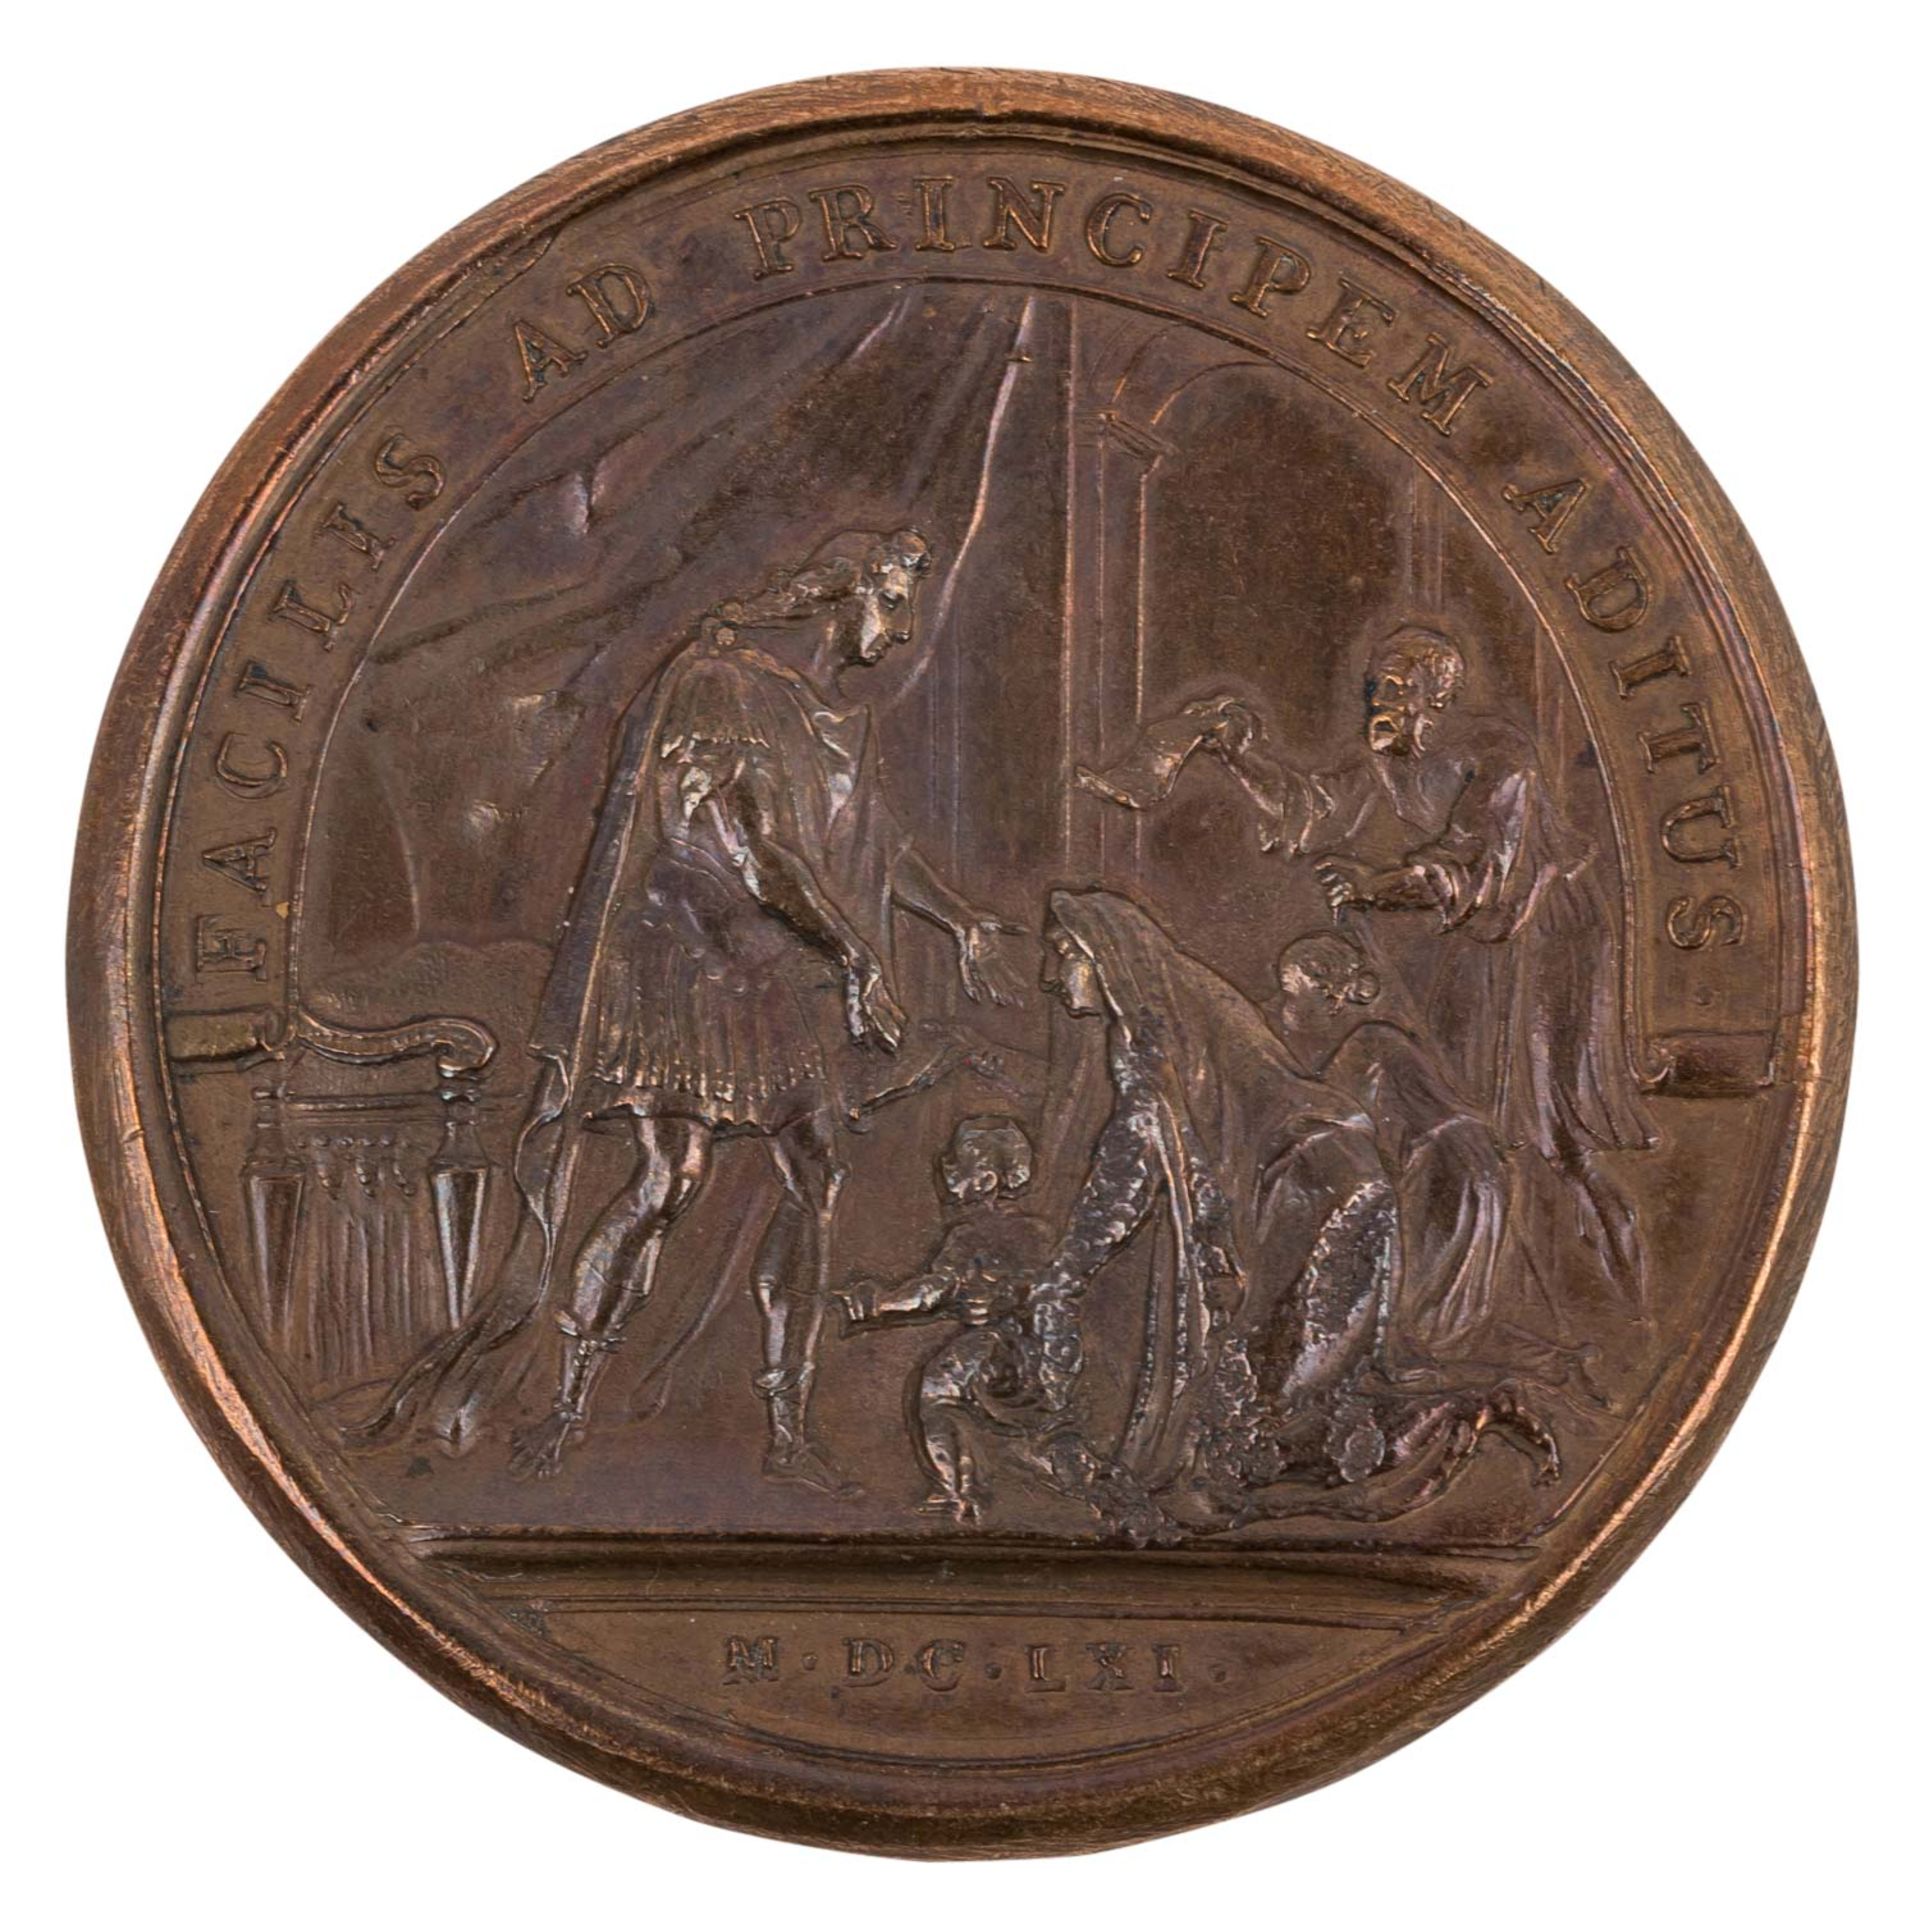 Frankreich - Bronzemedaille 1661, Ludwig XIV., auf seine persönliche Herrschaft, - Image 2 of 2